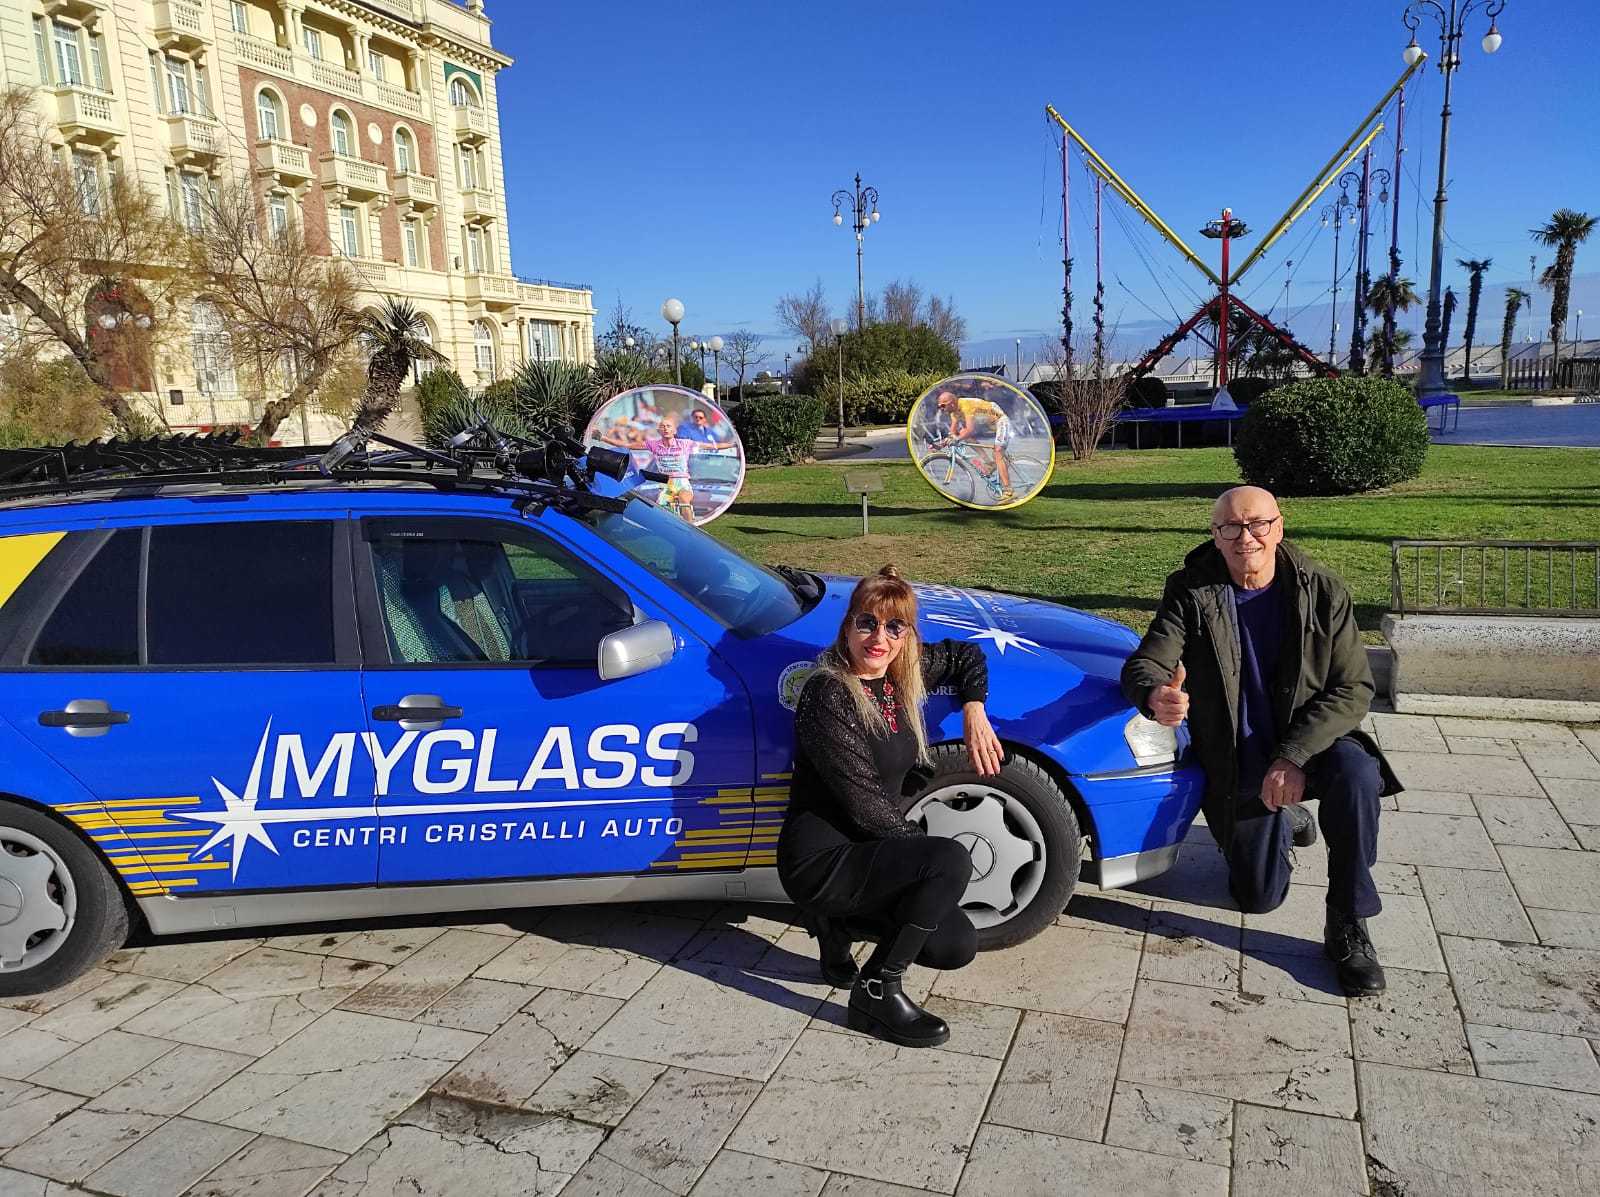 Ecco la MyGlass Centri Cristalli Auto targata 2021